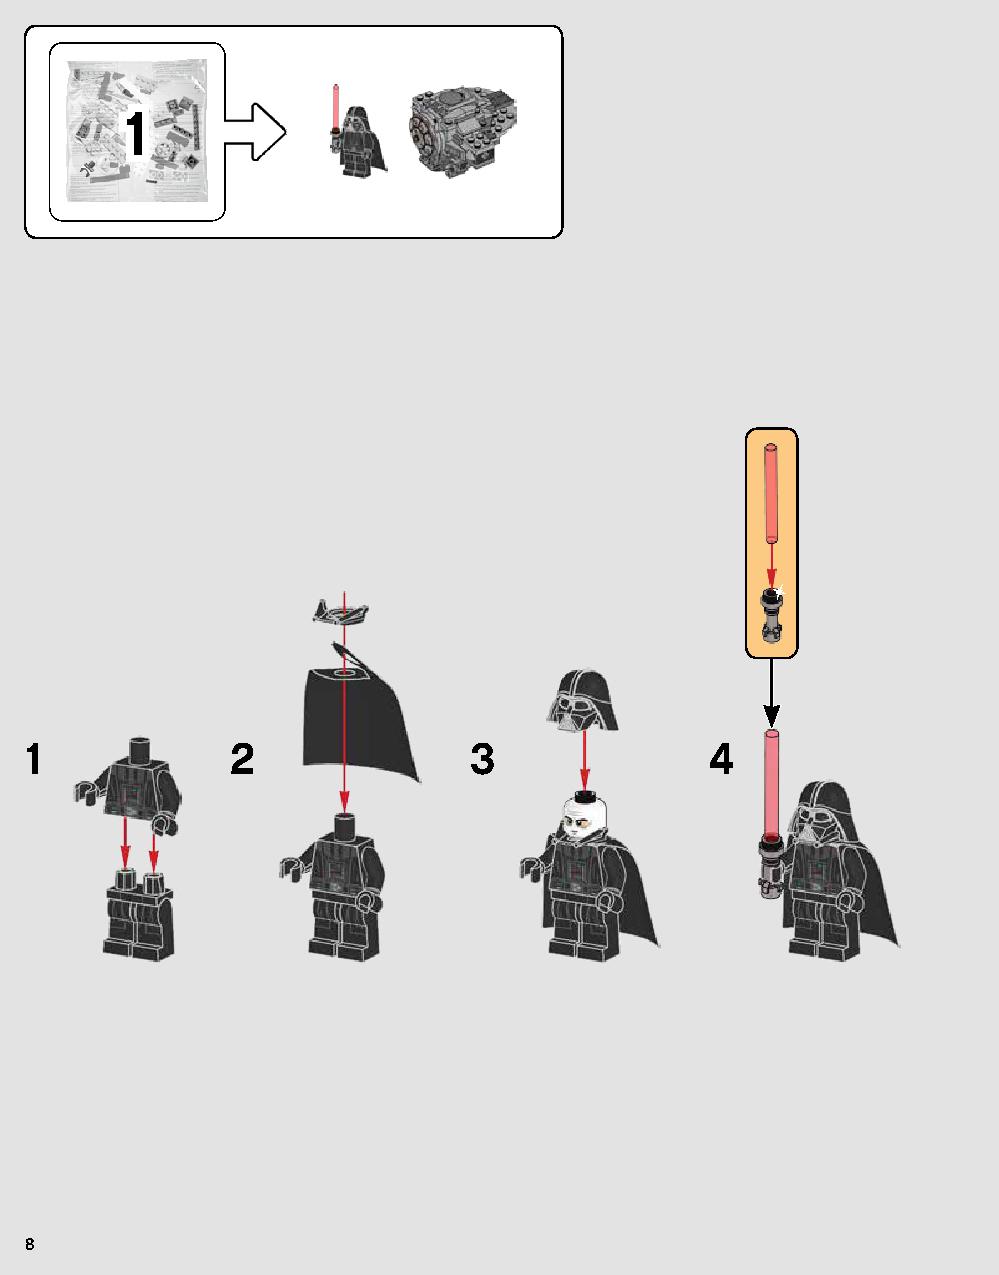 ダース・ベイダーの城 75251 レゴの商品情報 レゴの説明書・組立方法 8 page